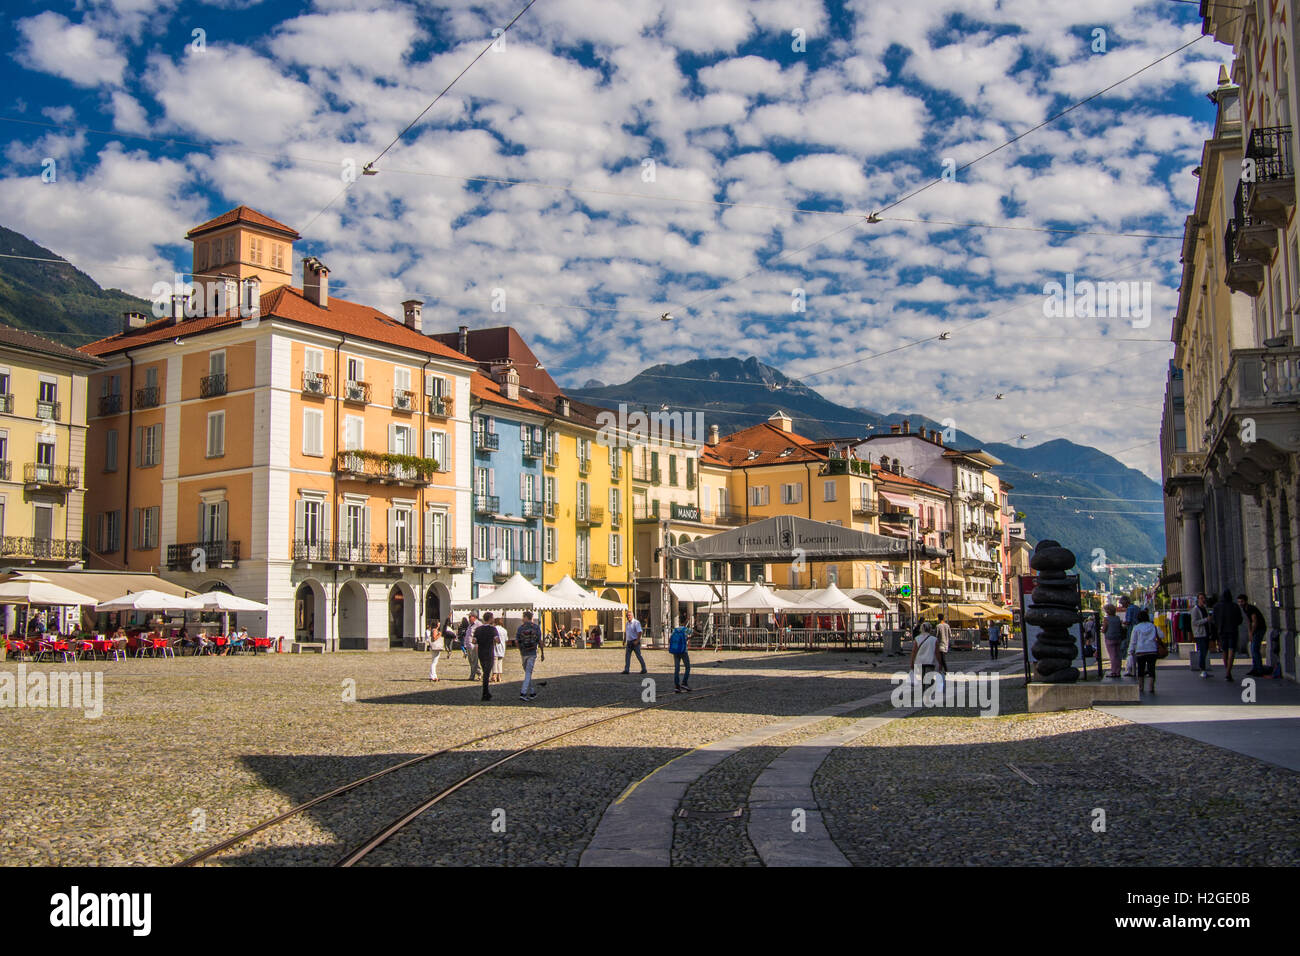 Piazza Grande, Locarno on Lake Maggiore, Switzerland. Stock Photo